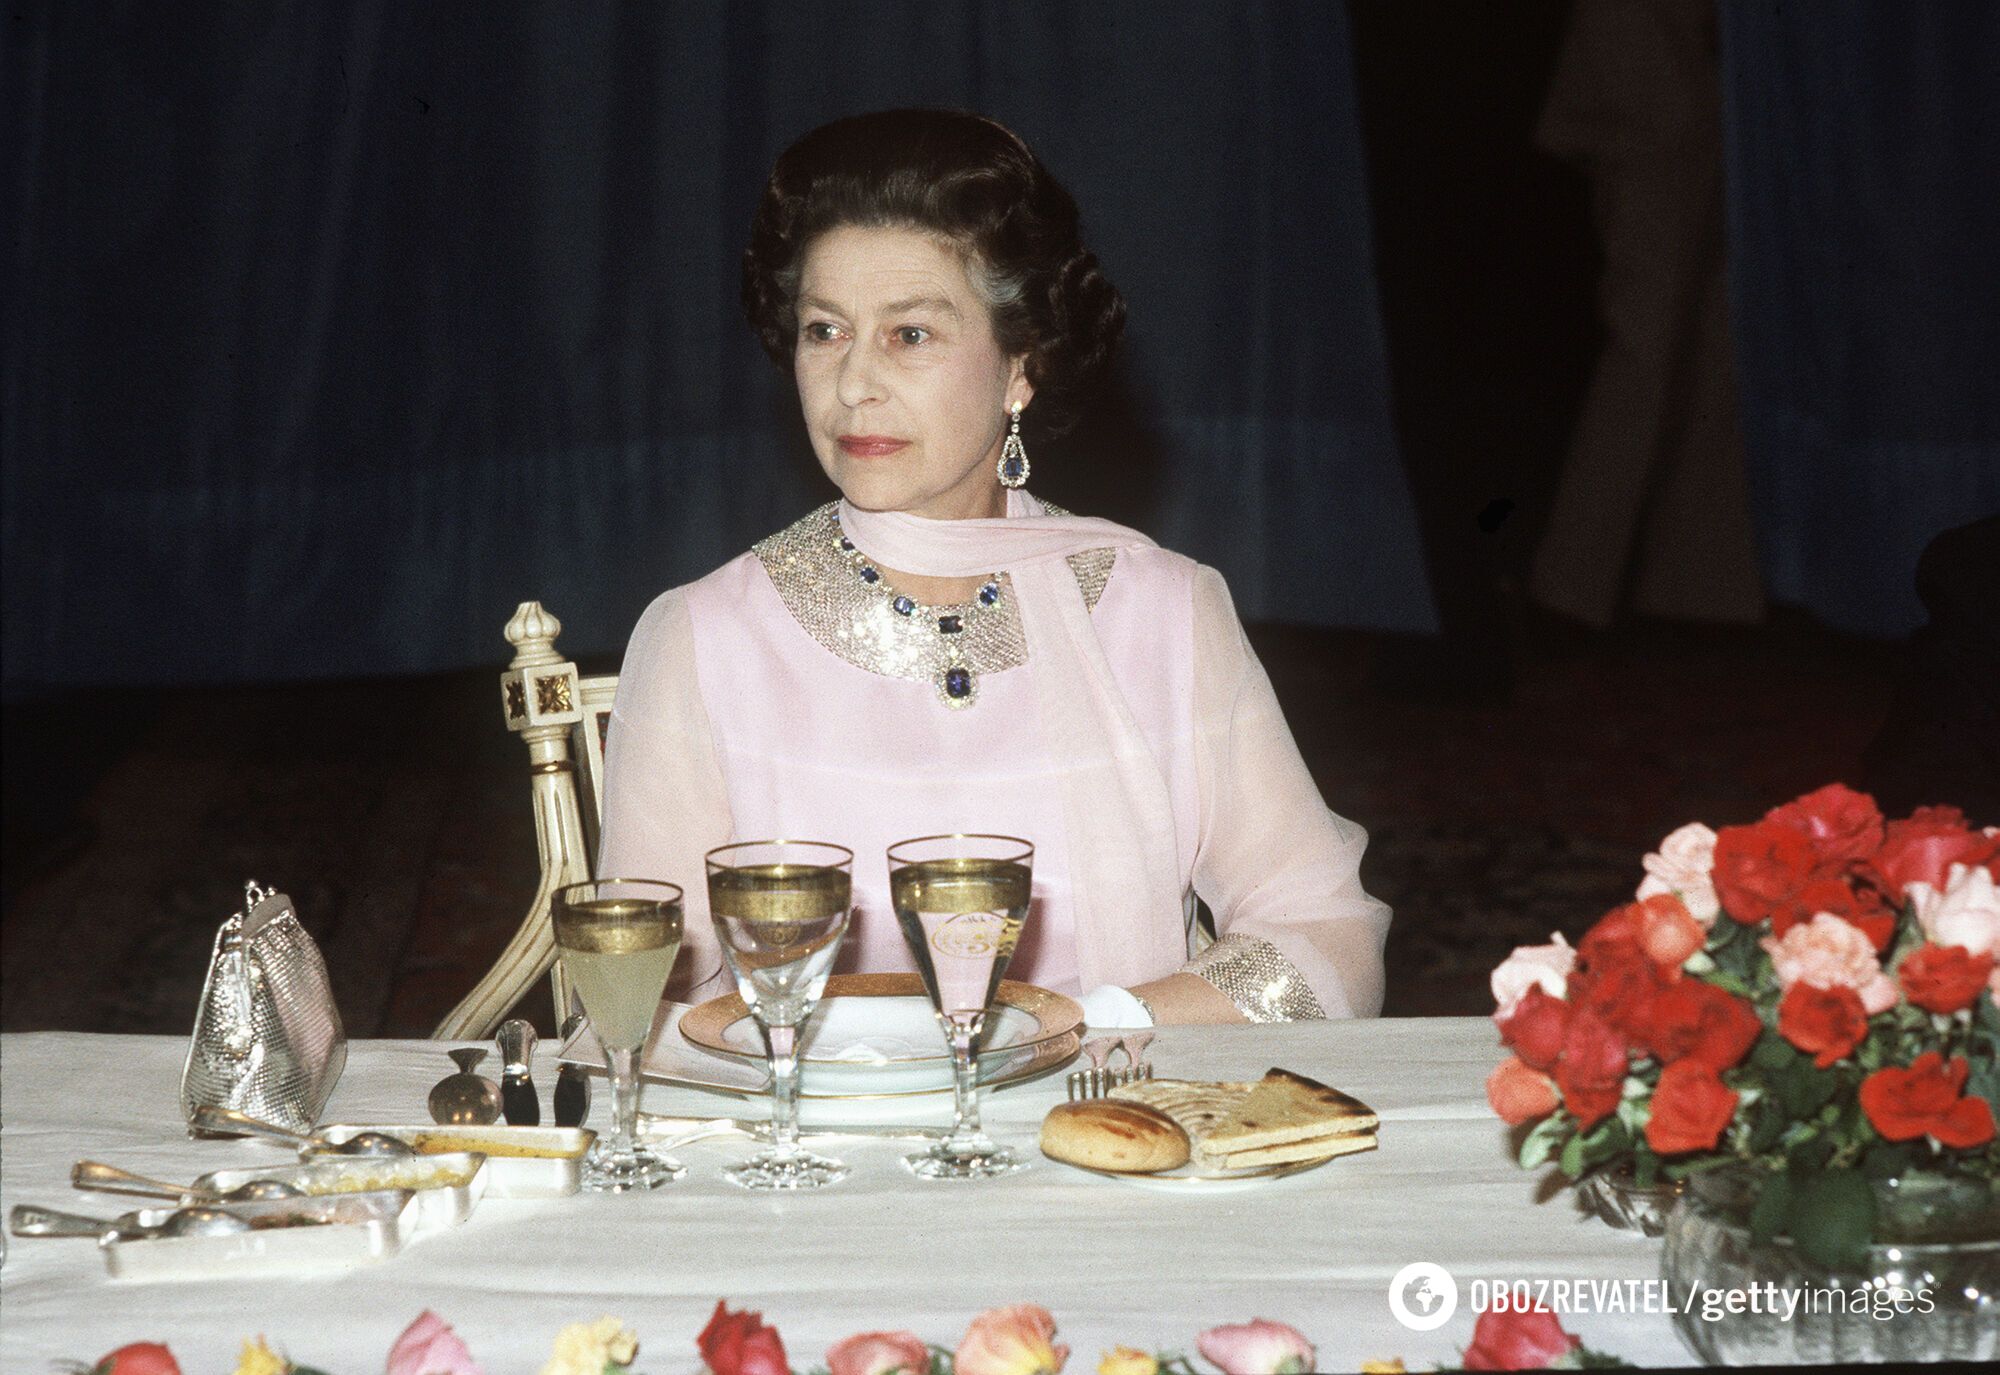 Żadnych ziemniaków, ryżu ani makaronu: królewski szef kuchni ujawnia, o co nie prosiła zmarła Elżbieta II